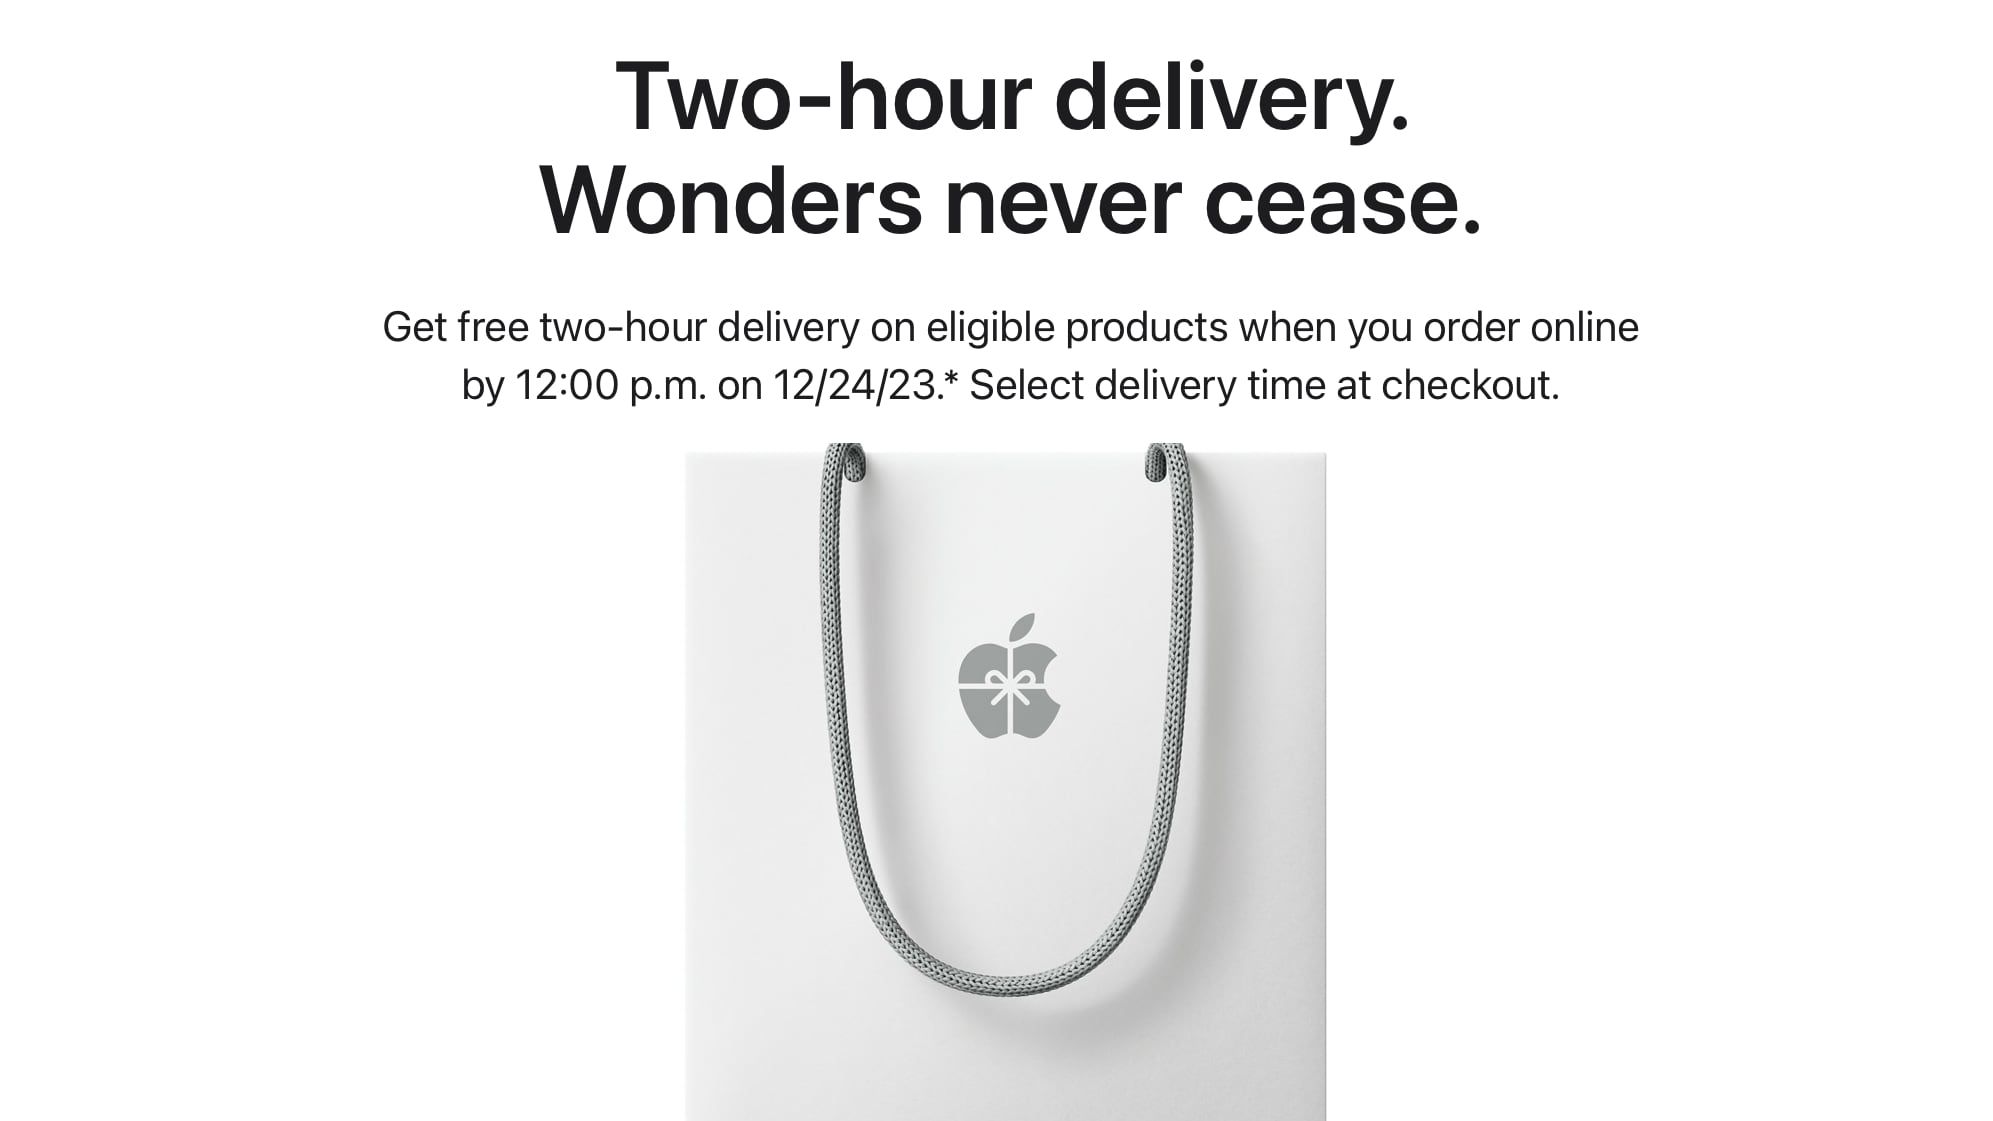 اپل برای هدایای لحظه آخری تحویل رایگان دو ساعته ارائه می دهد